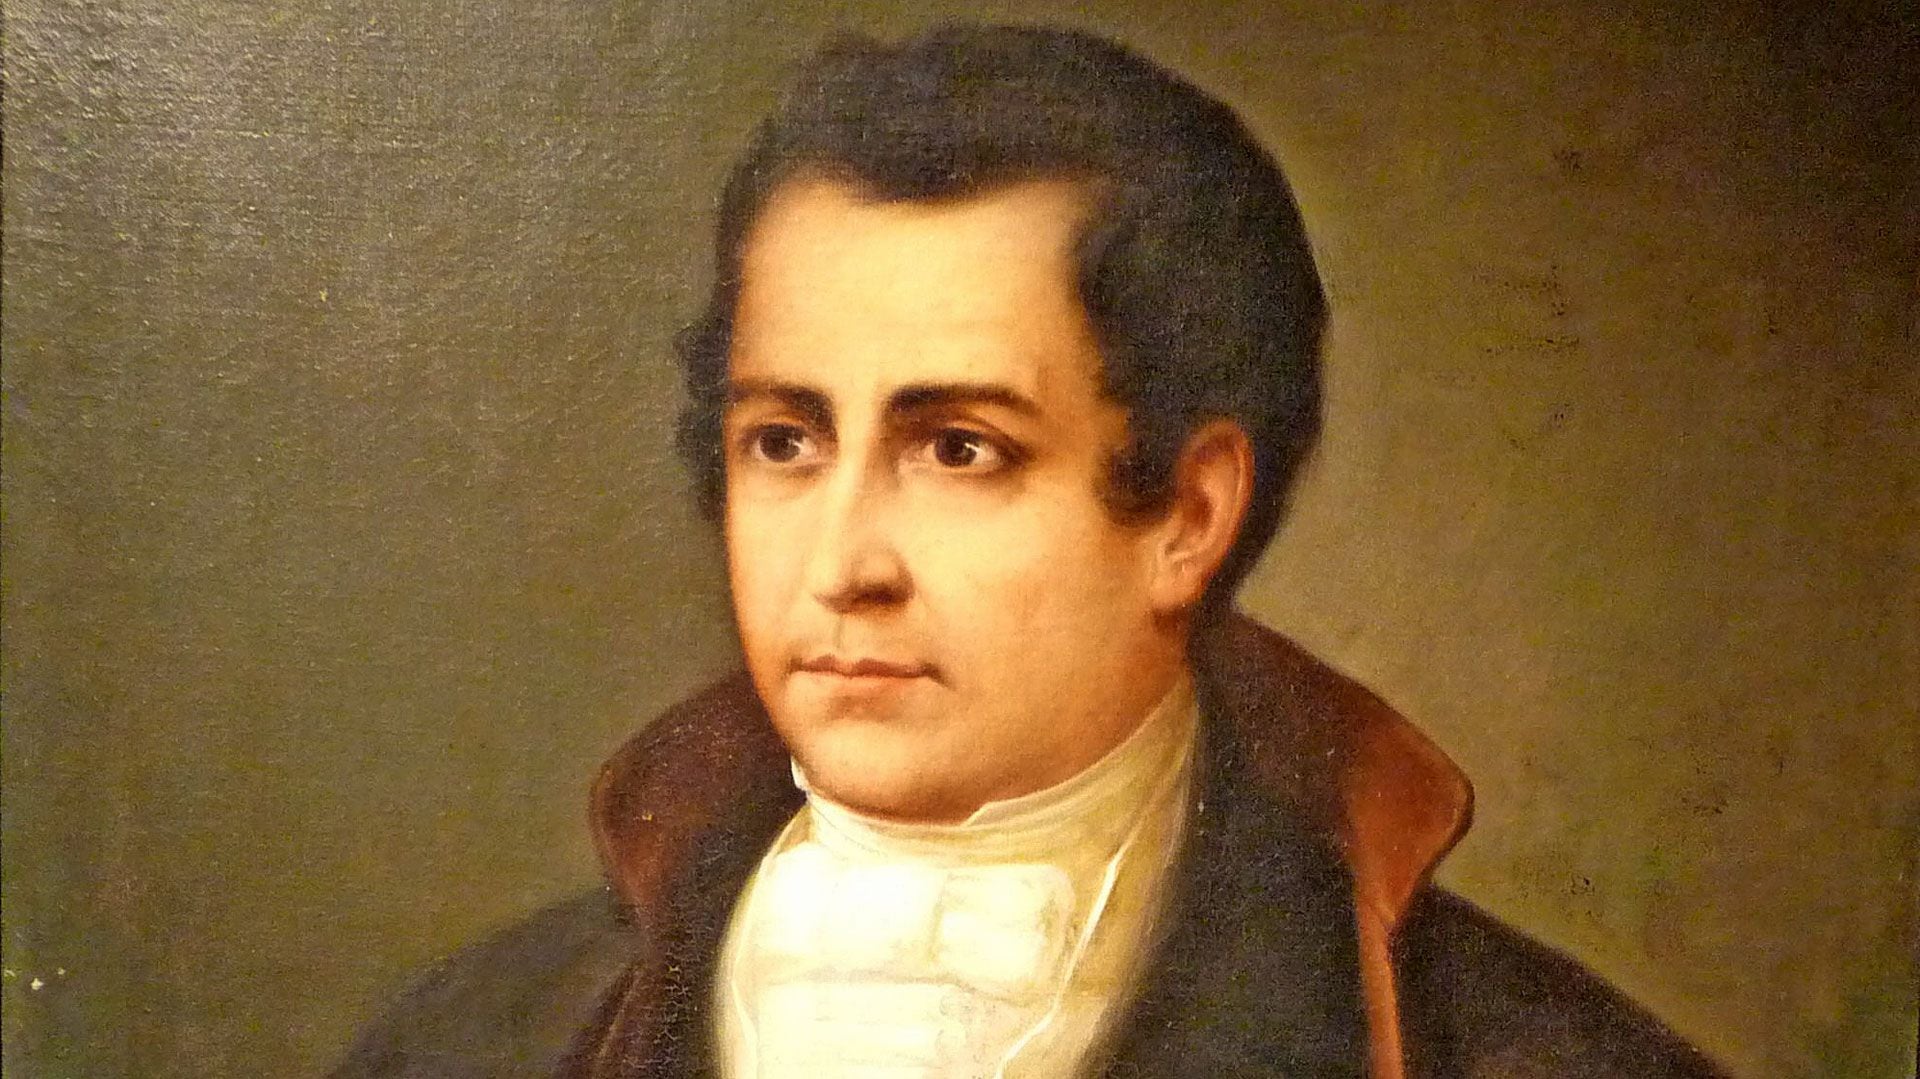 Moreno estudió teología y derecho. A fin de 1805 se radicó en Buenos Aires y ejerció leyes